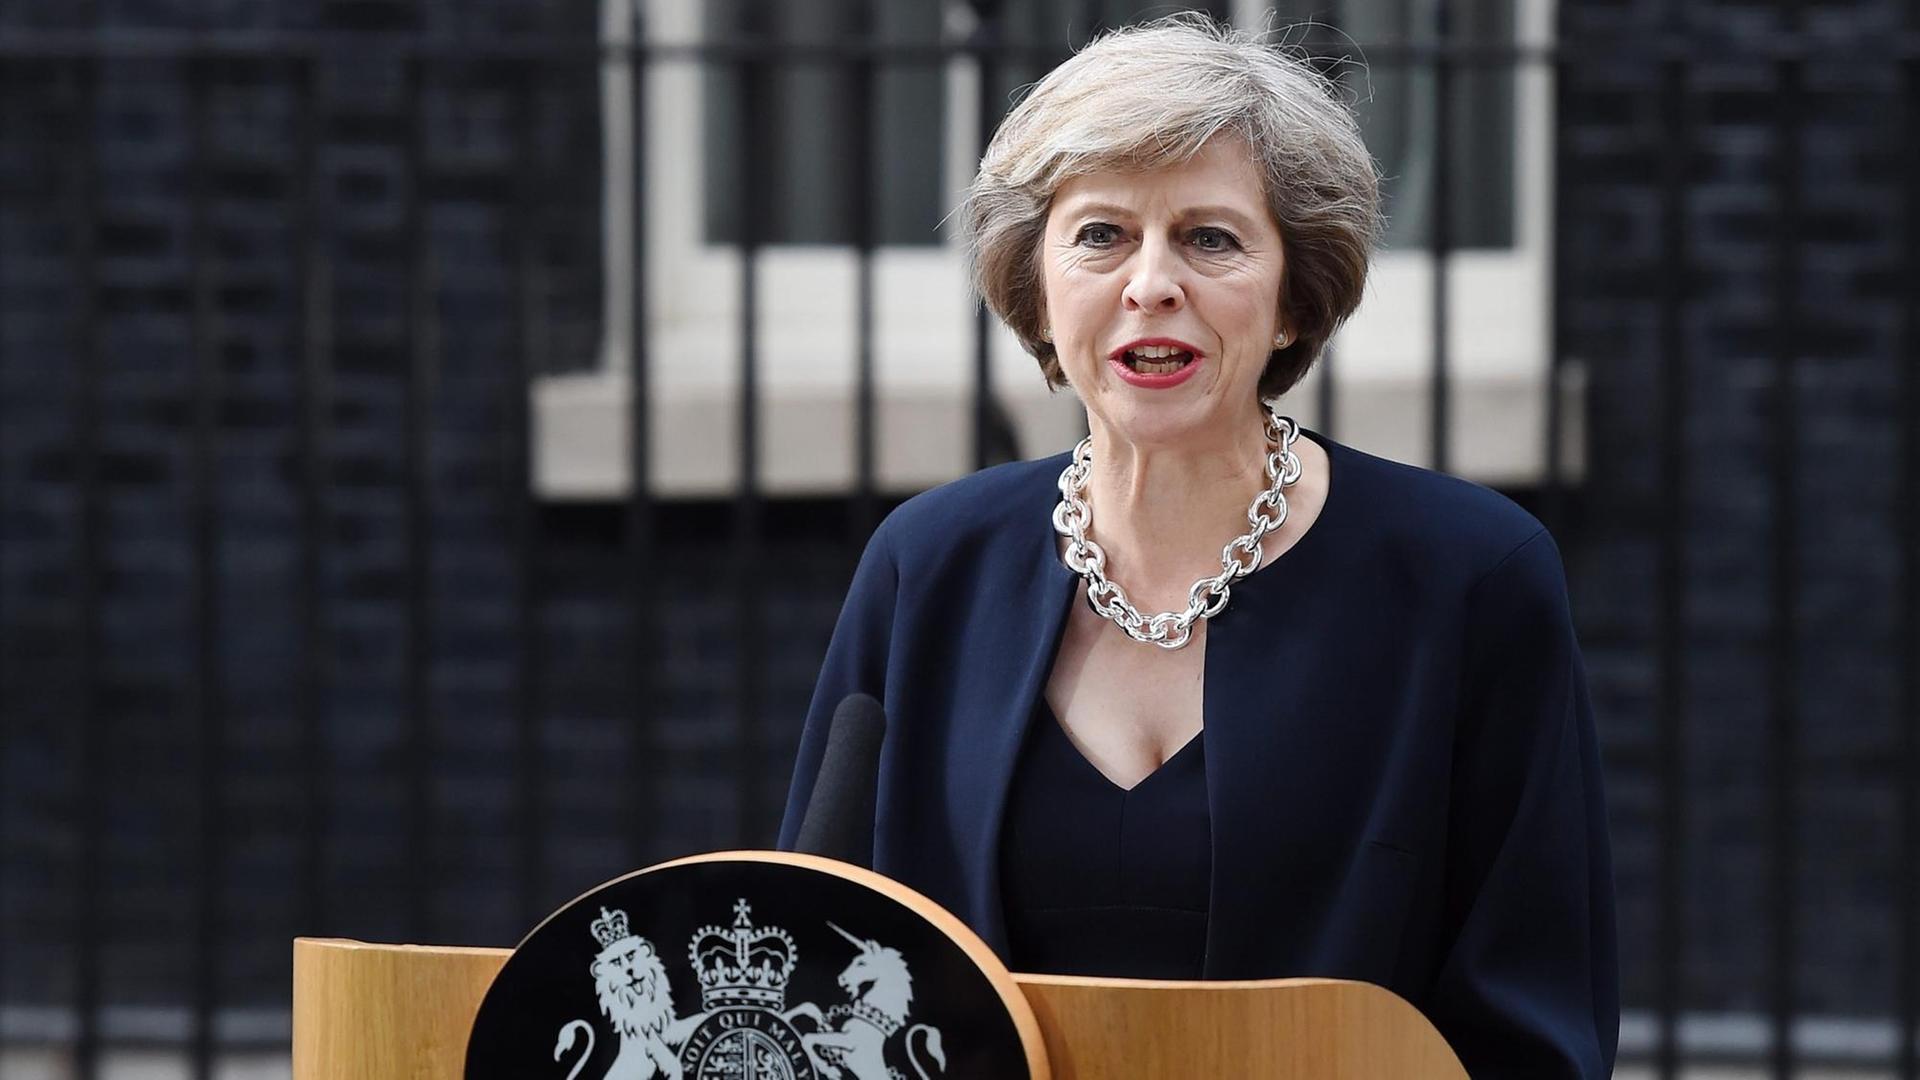 Theresa May ist die neue Chefin von der Regierung in dem Land Groß-Britannien.